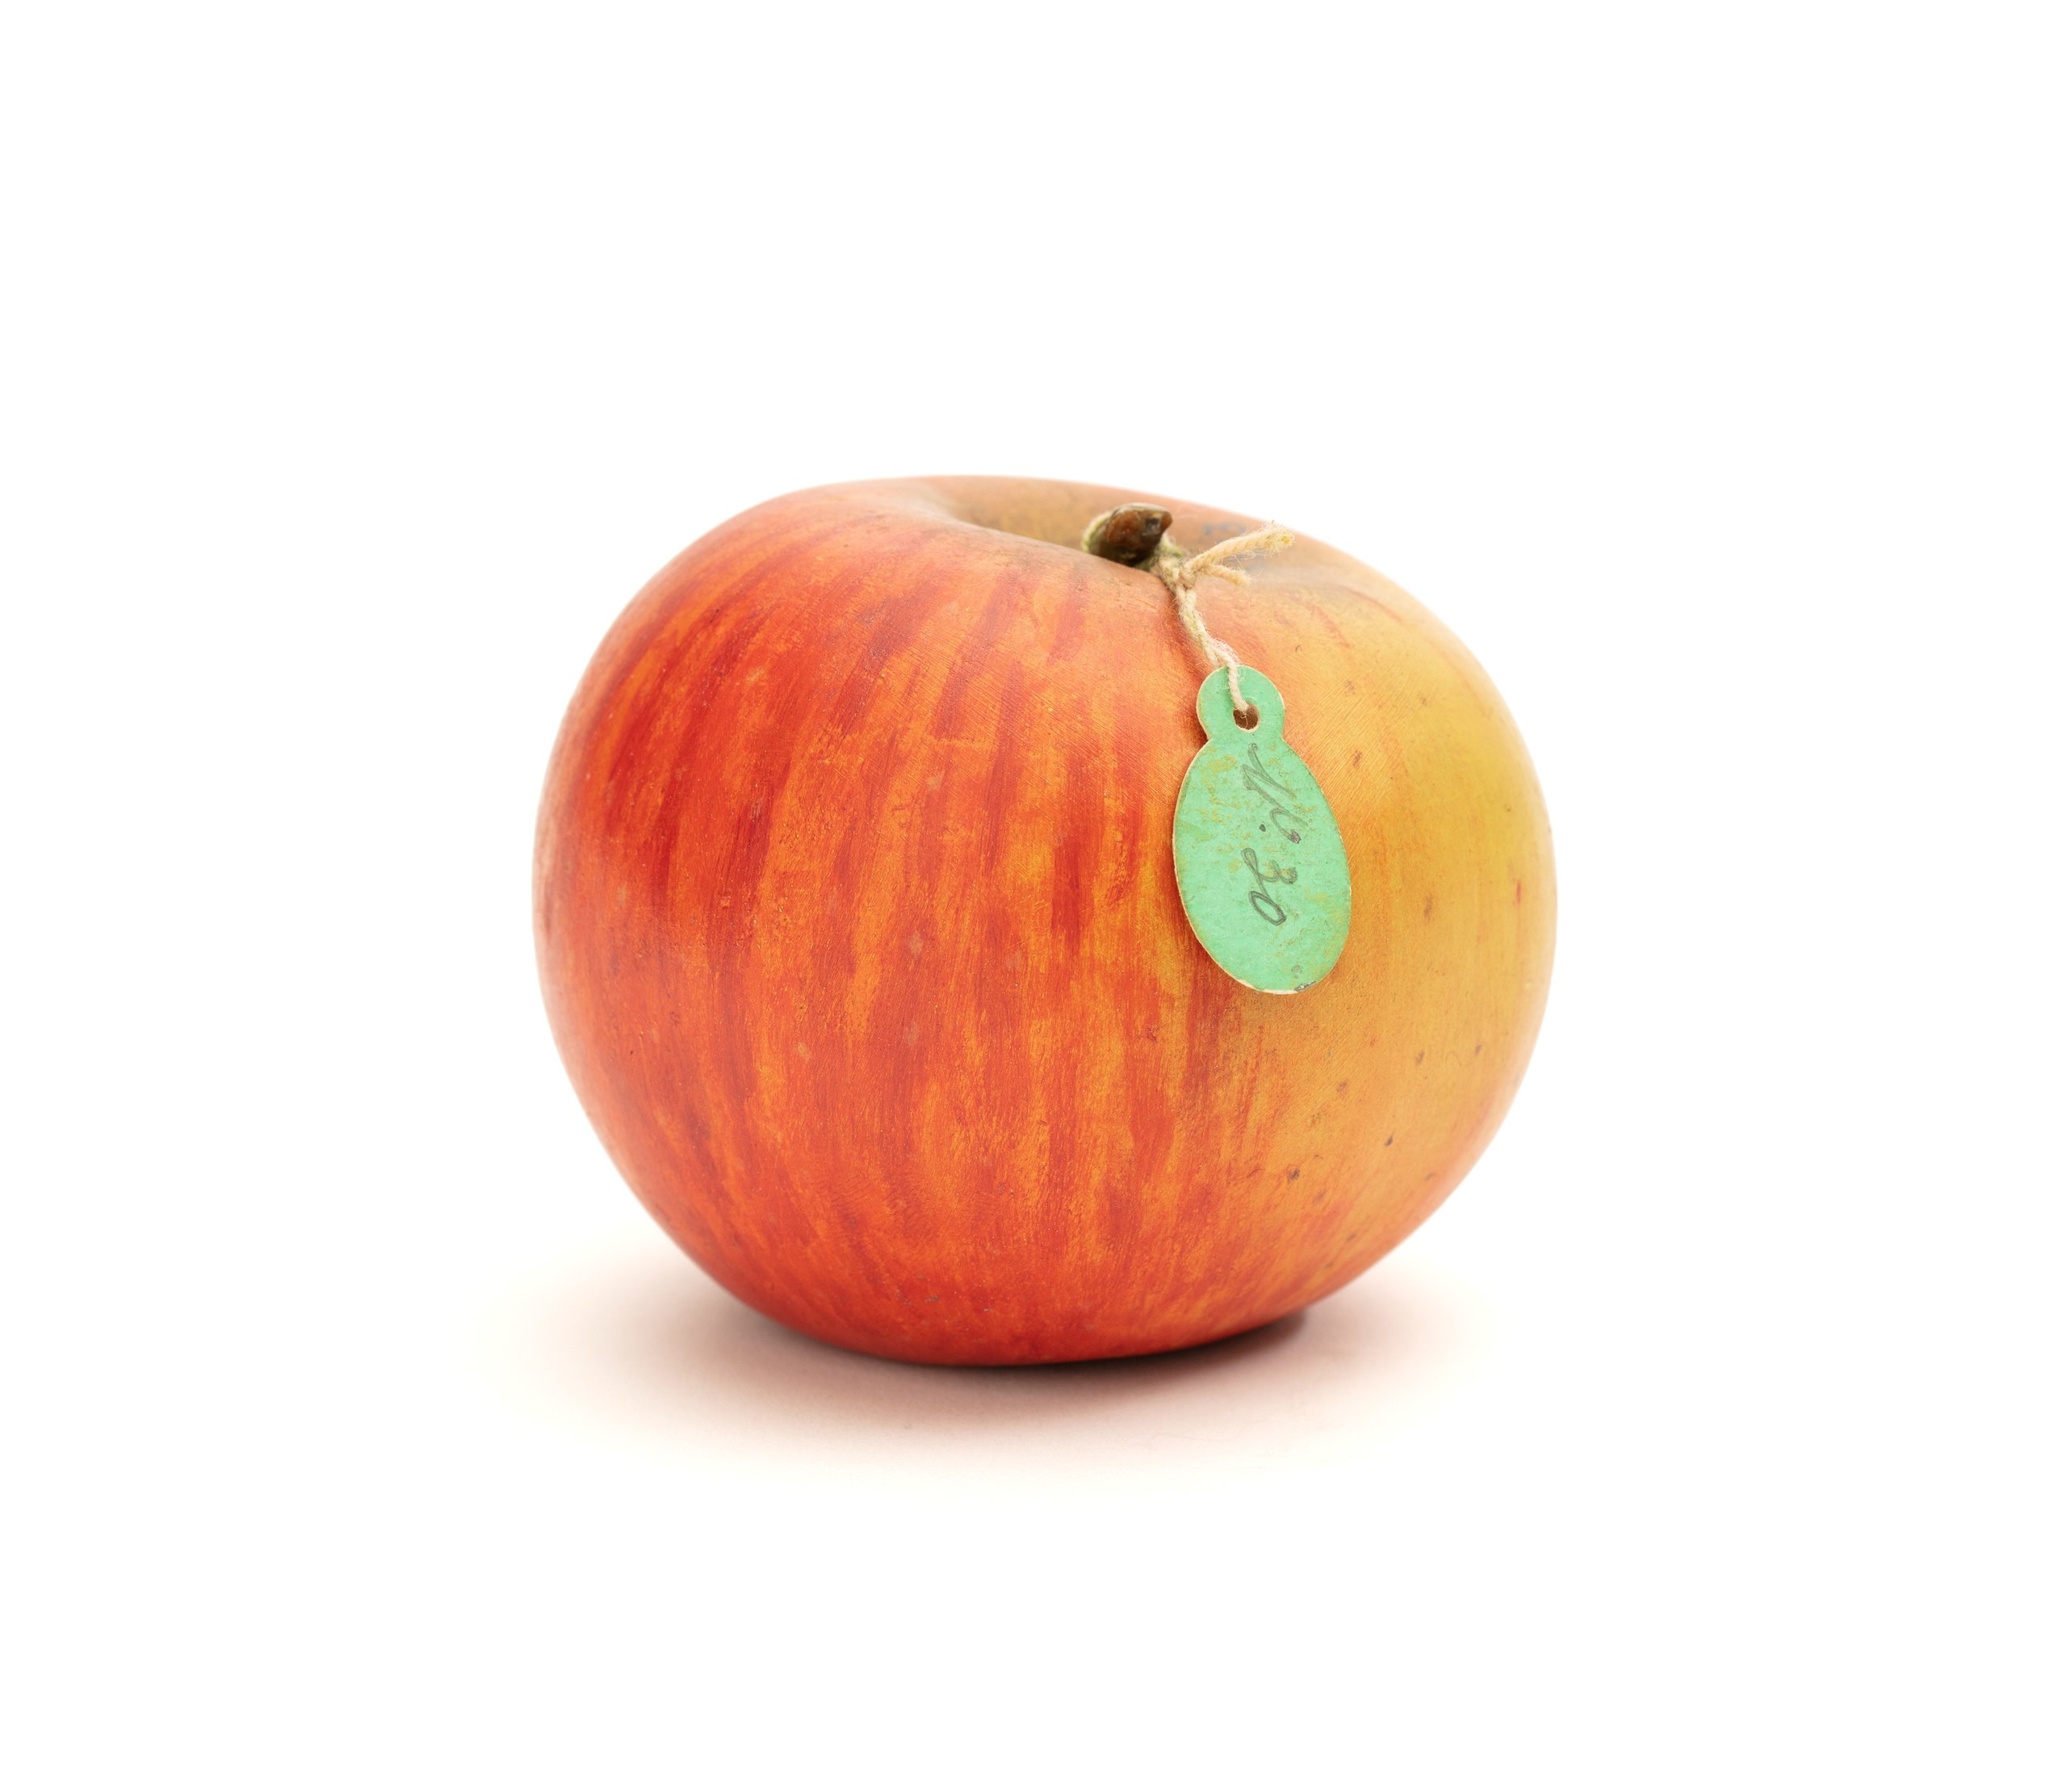 Model of a 'Royal Permain' apple